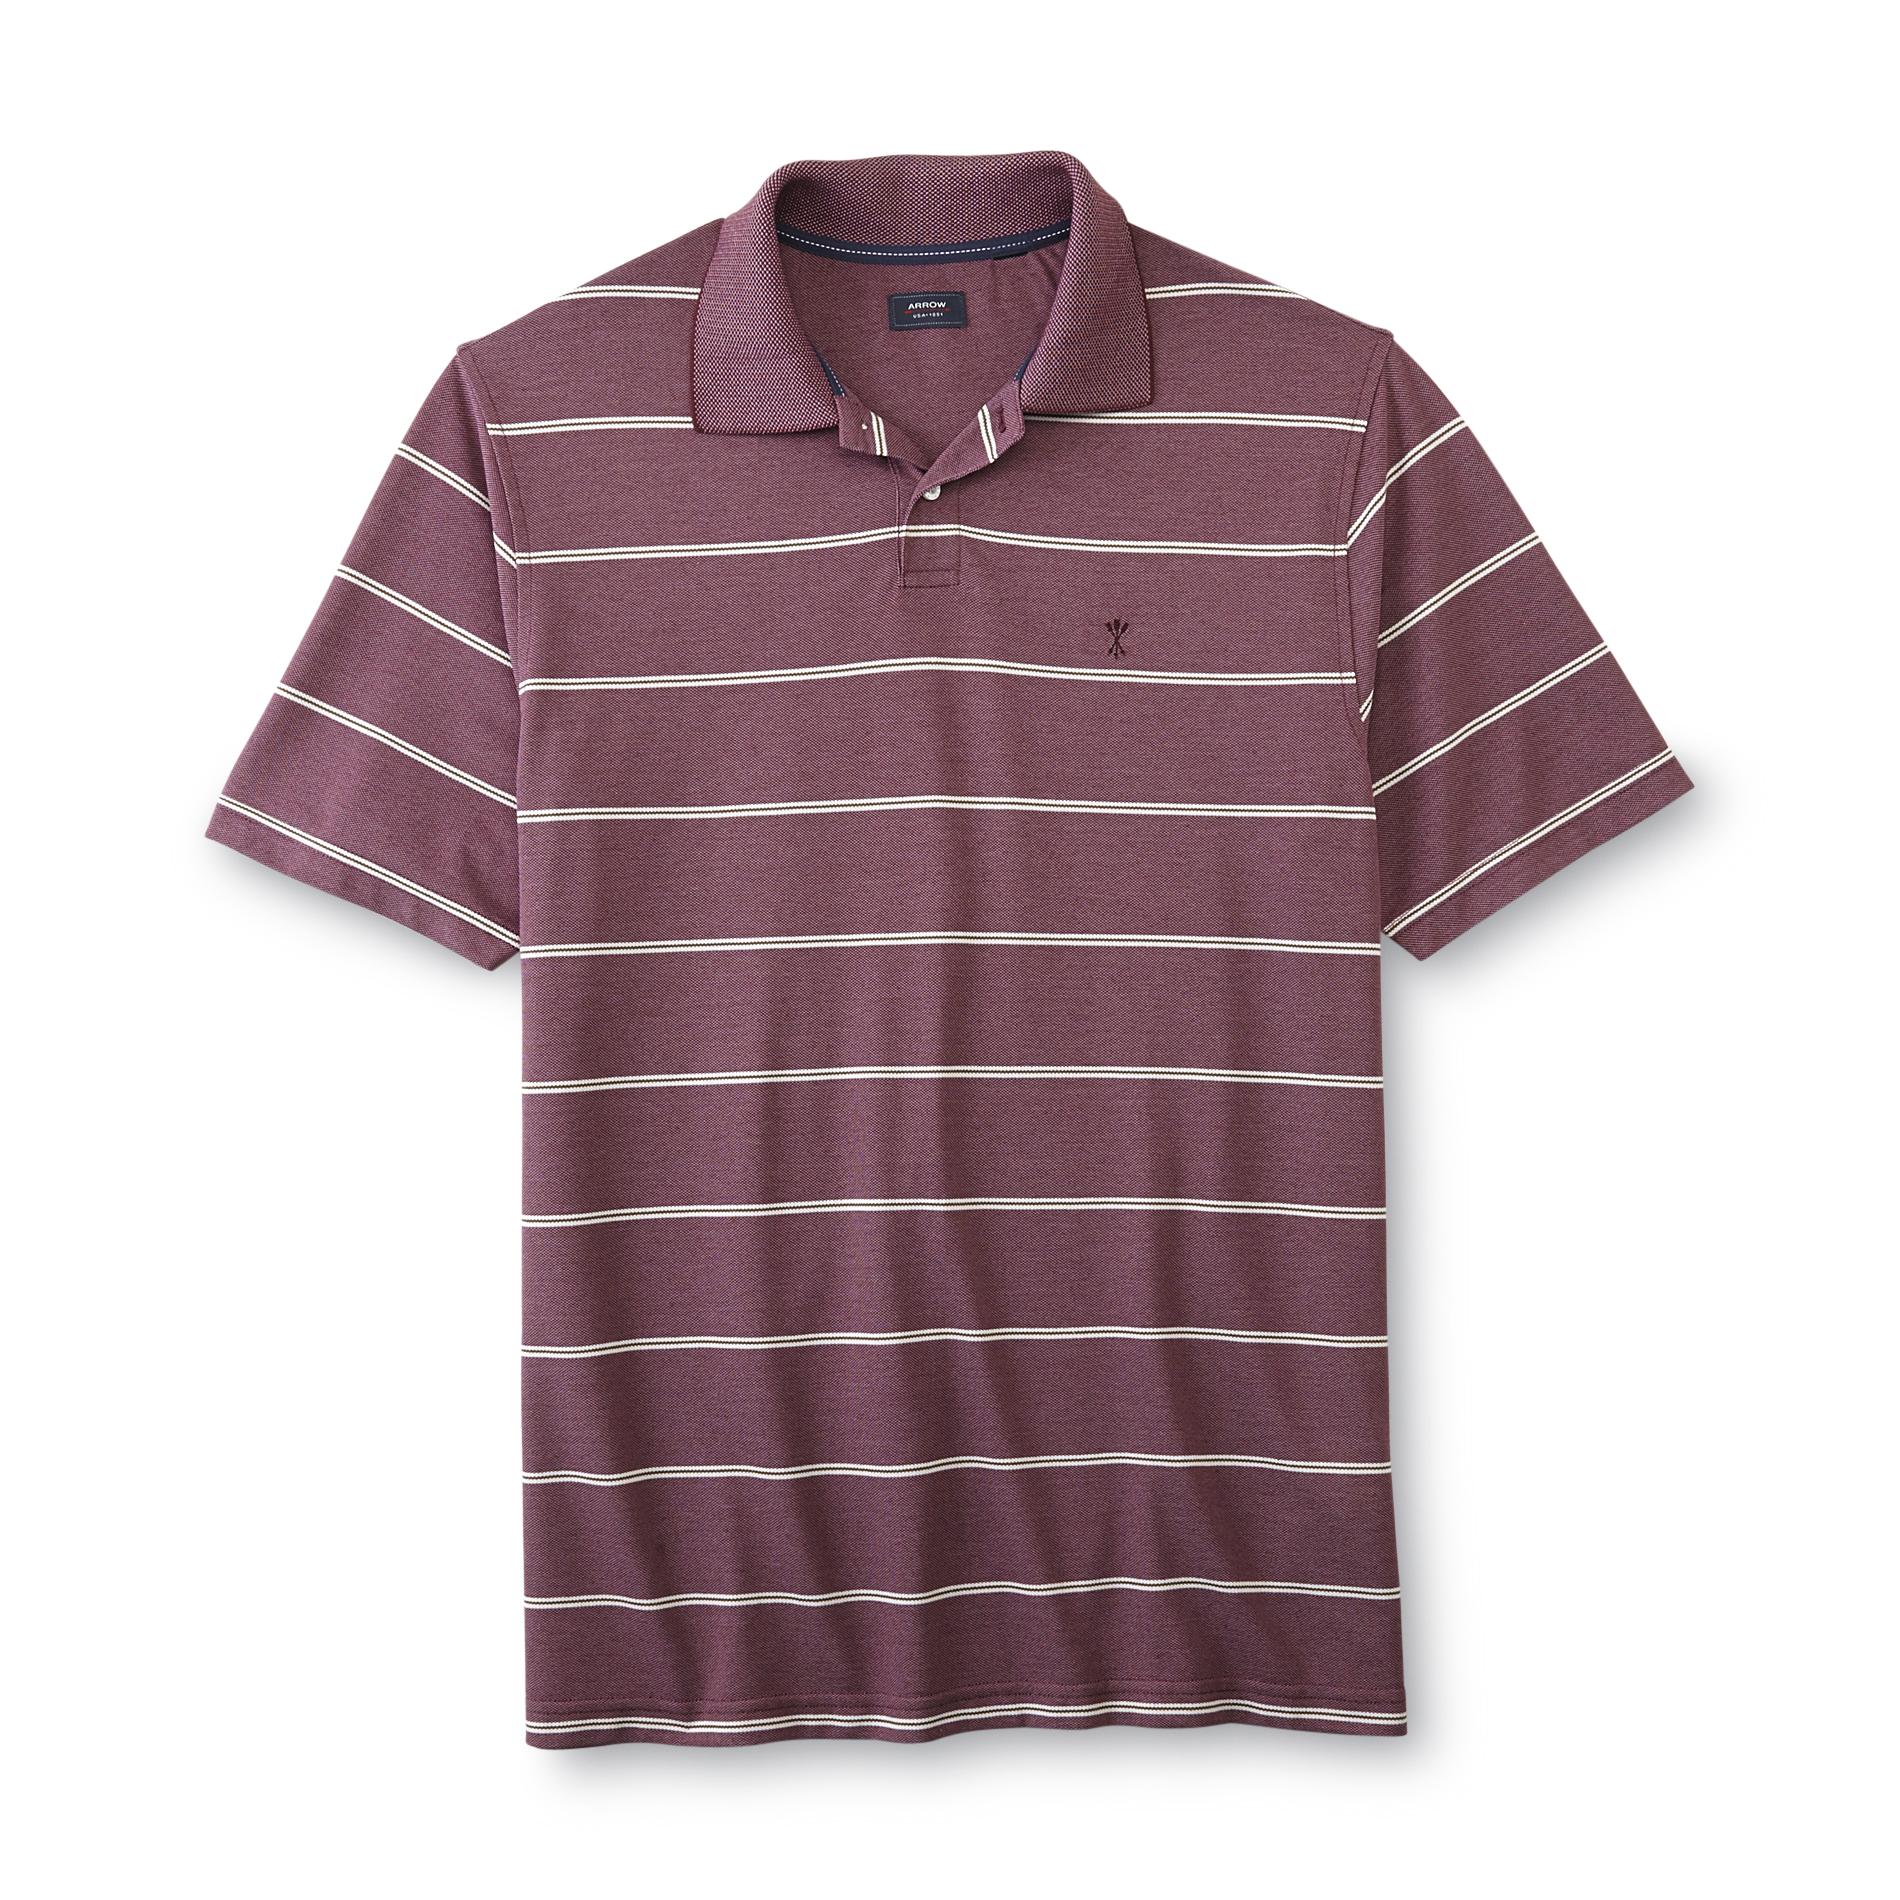 Arrow Men's Polo Shirt - Striped